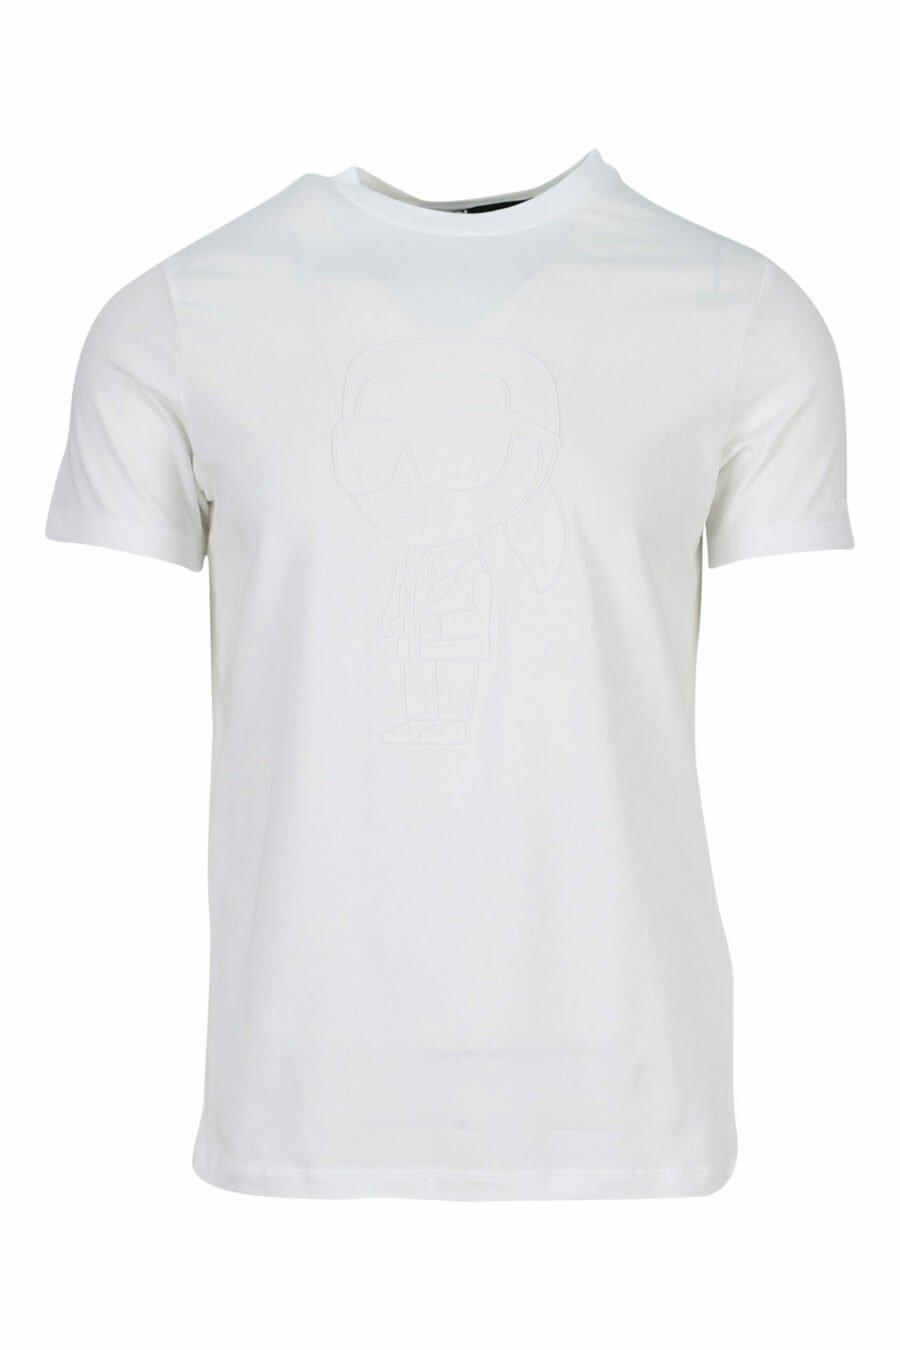 White T-shirt with monochrome rubberised maxilogo - 4062226401180 scaled